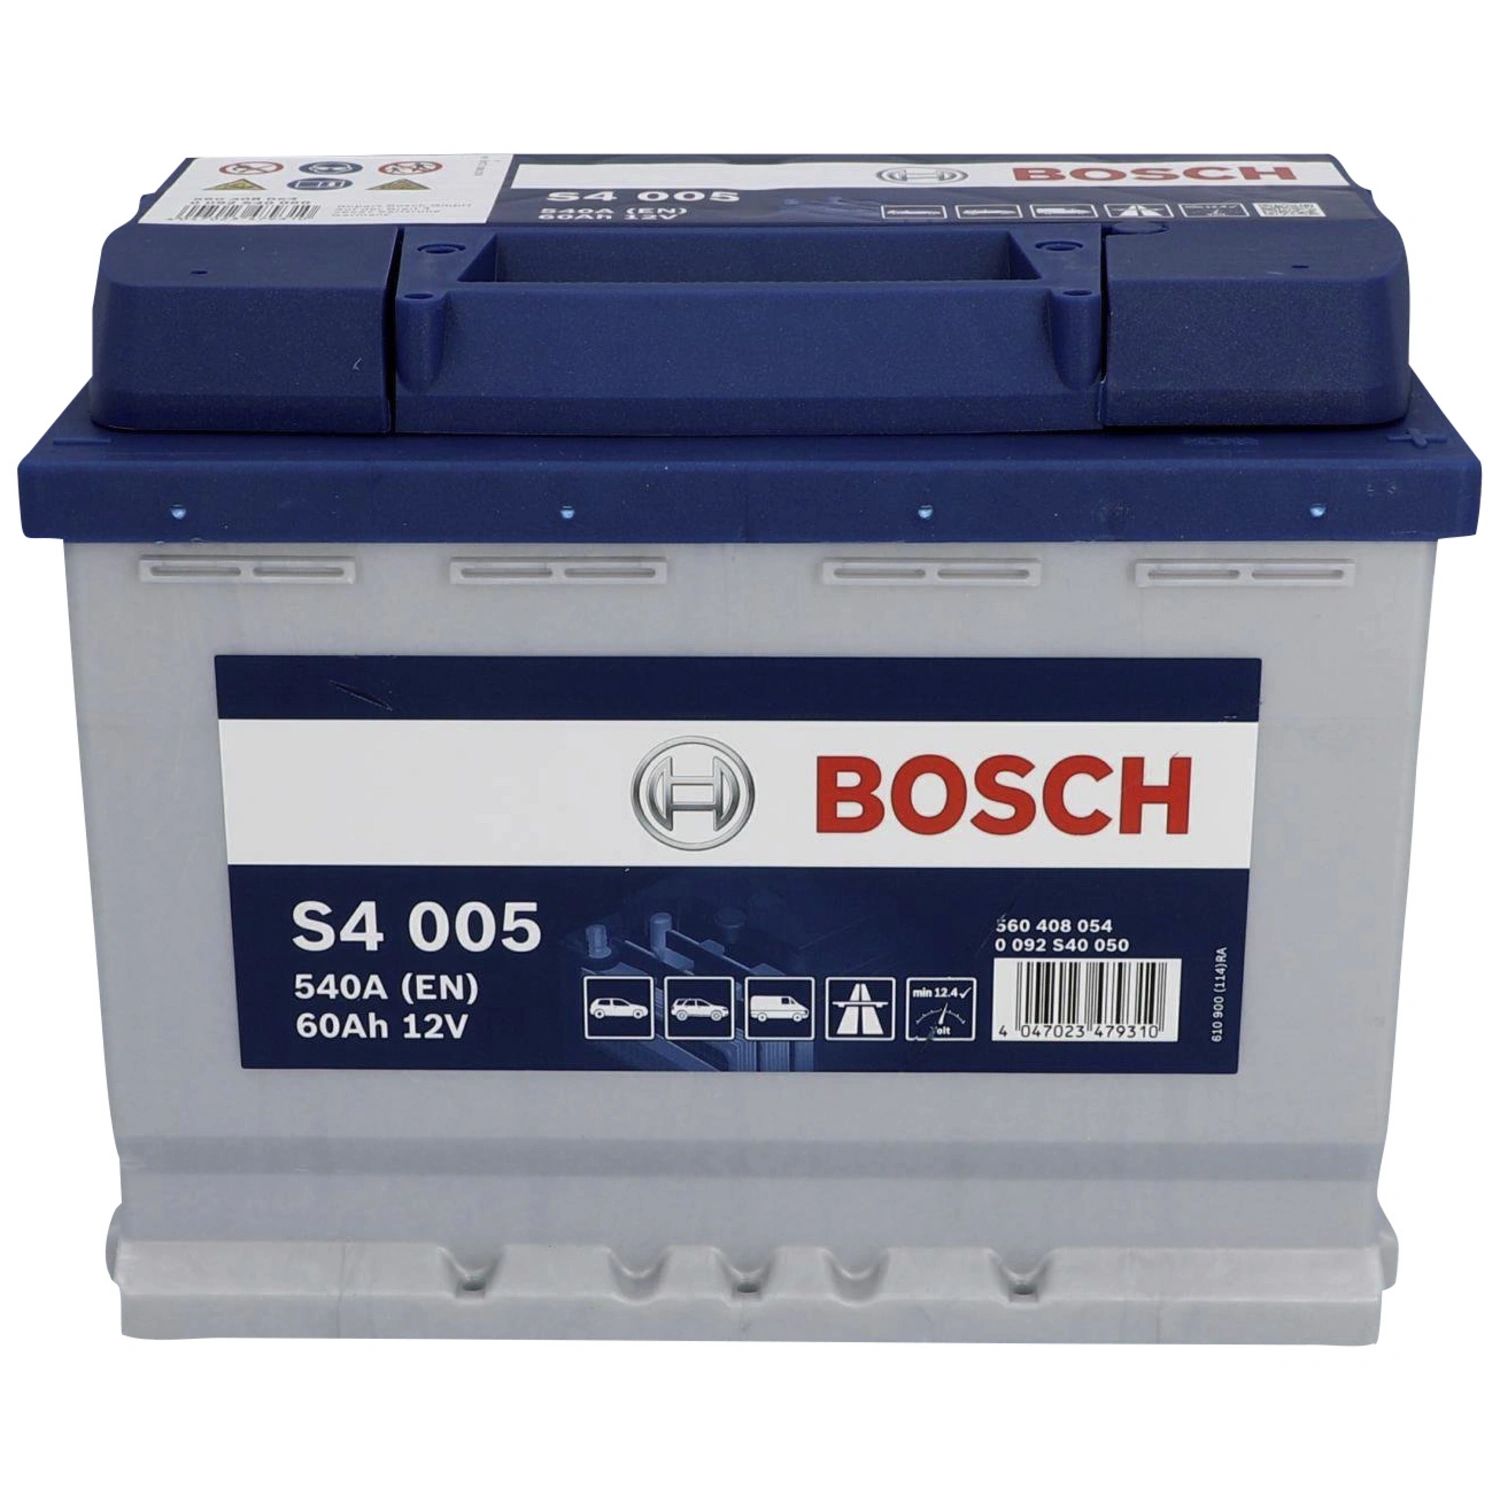 BOSCH Starterbatterie 12V 554 400 053 54Ah S5 002 H4